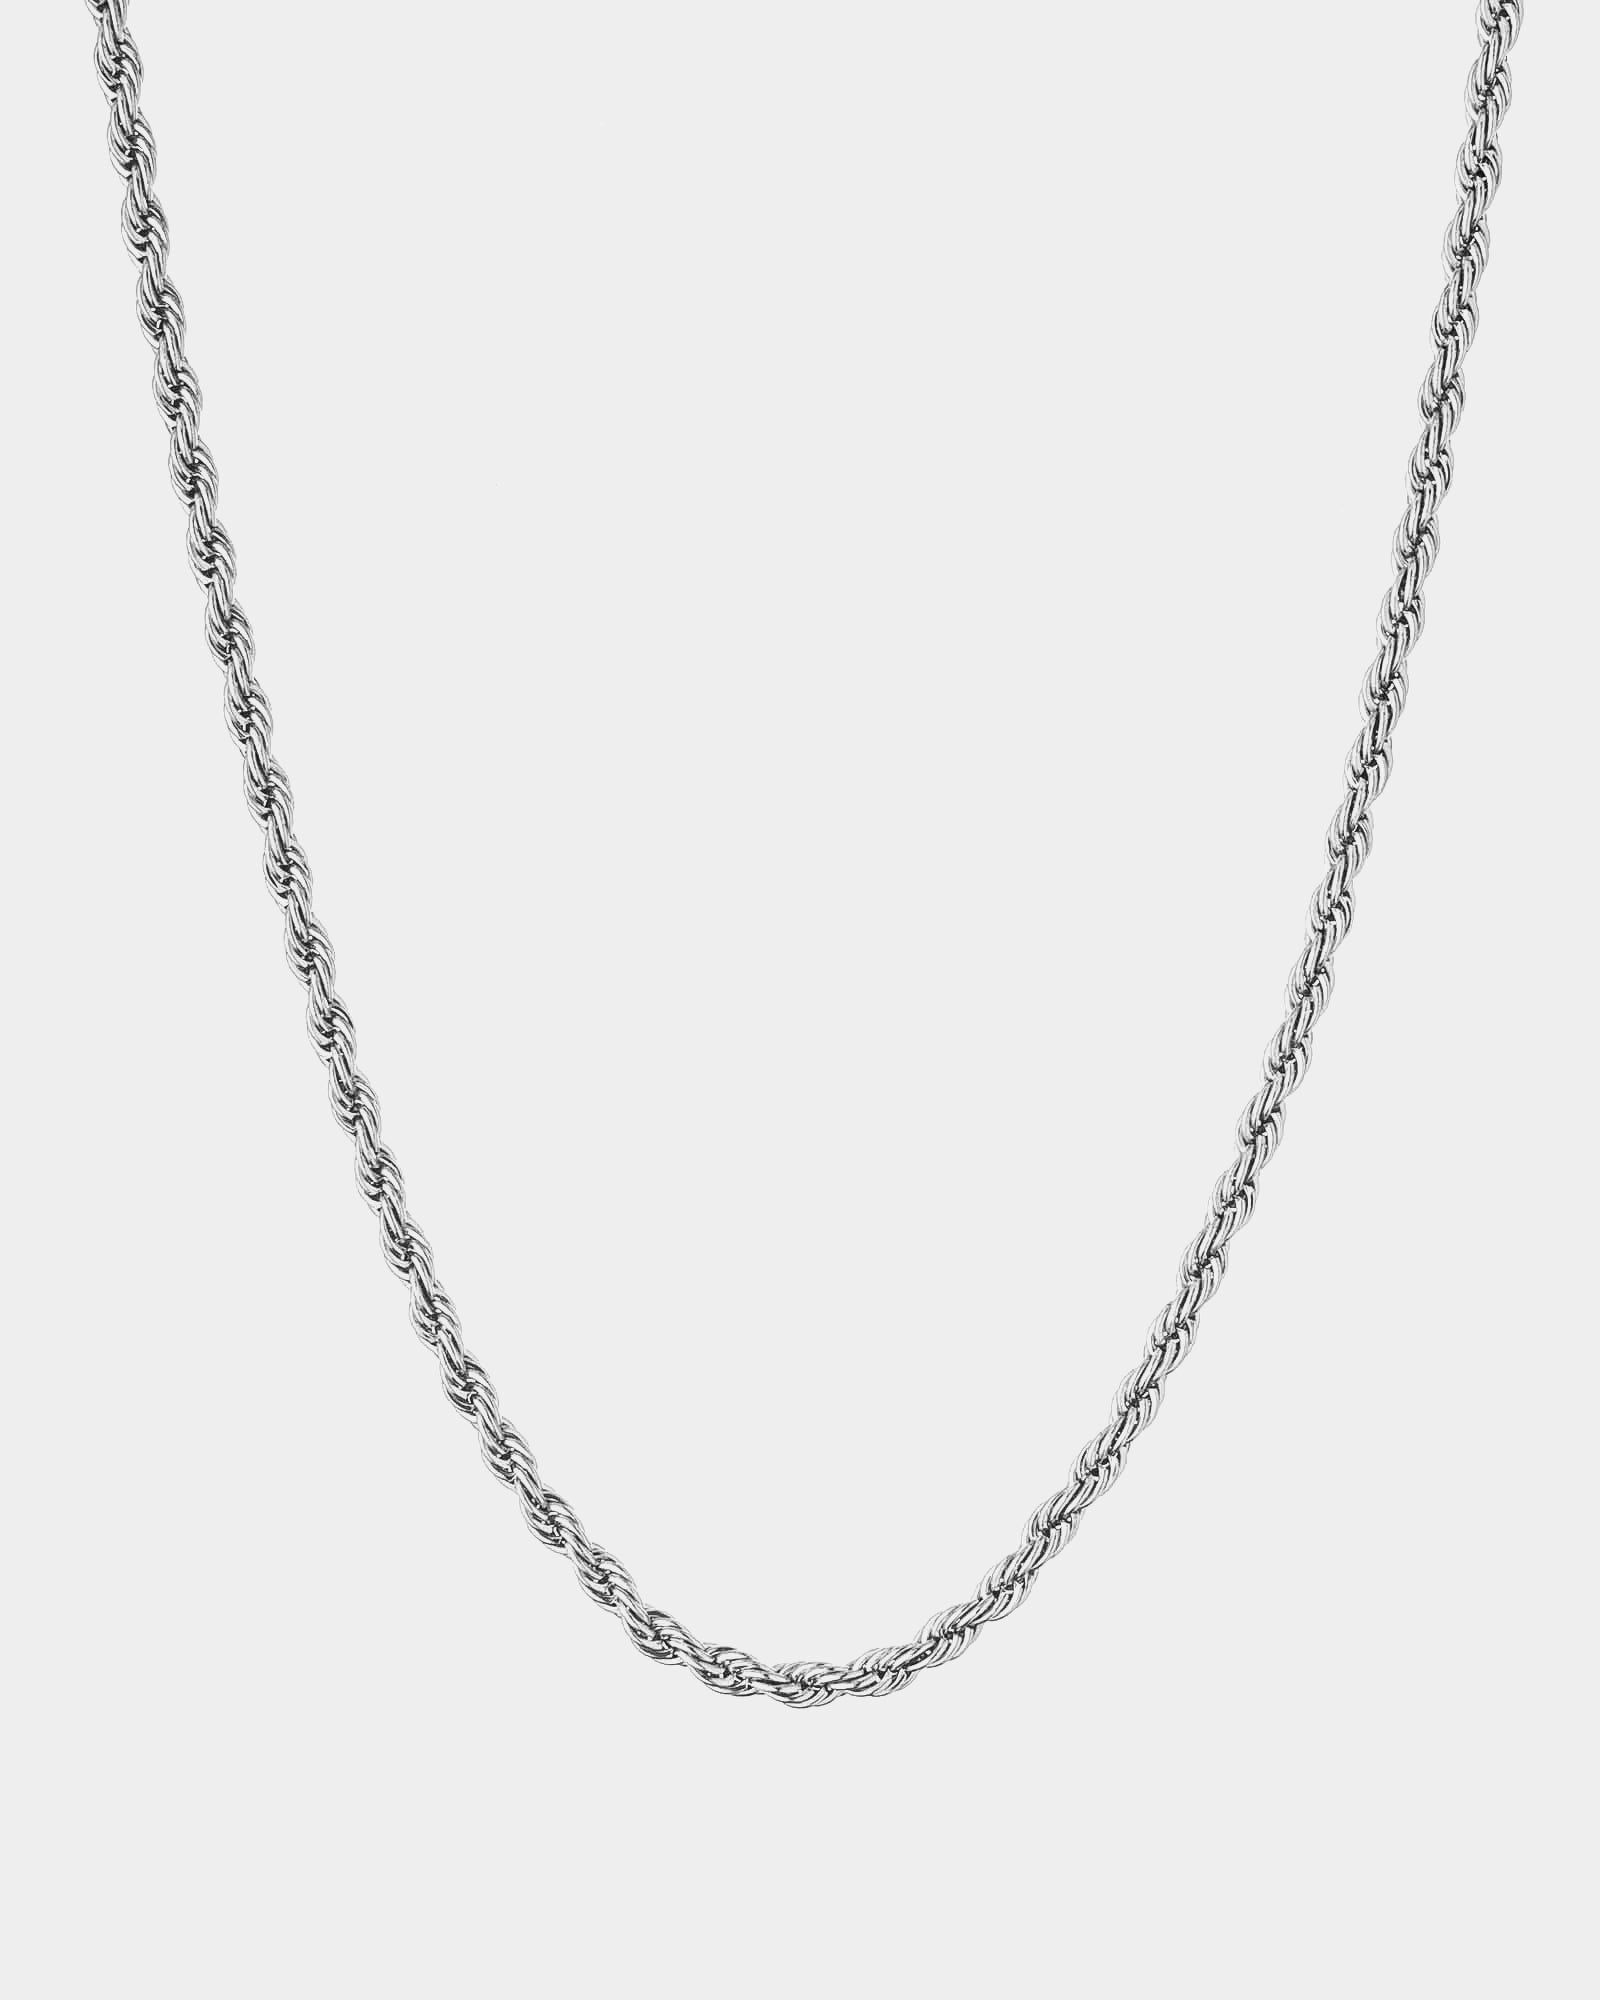 Raso - Stainless Steel Necklace Raso - Online Unissex Jewelry - Dicci